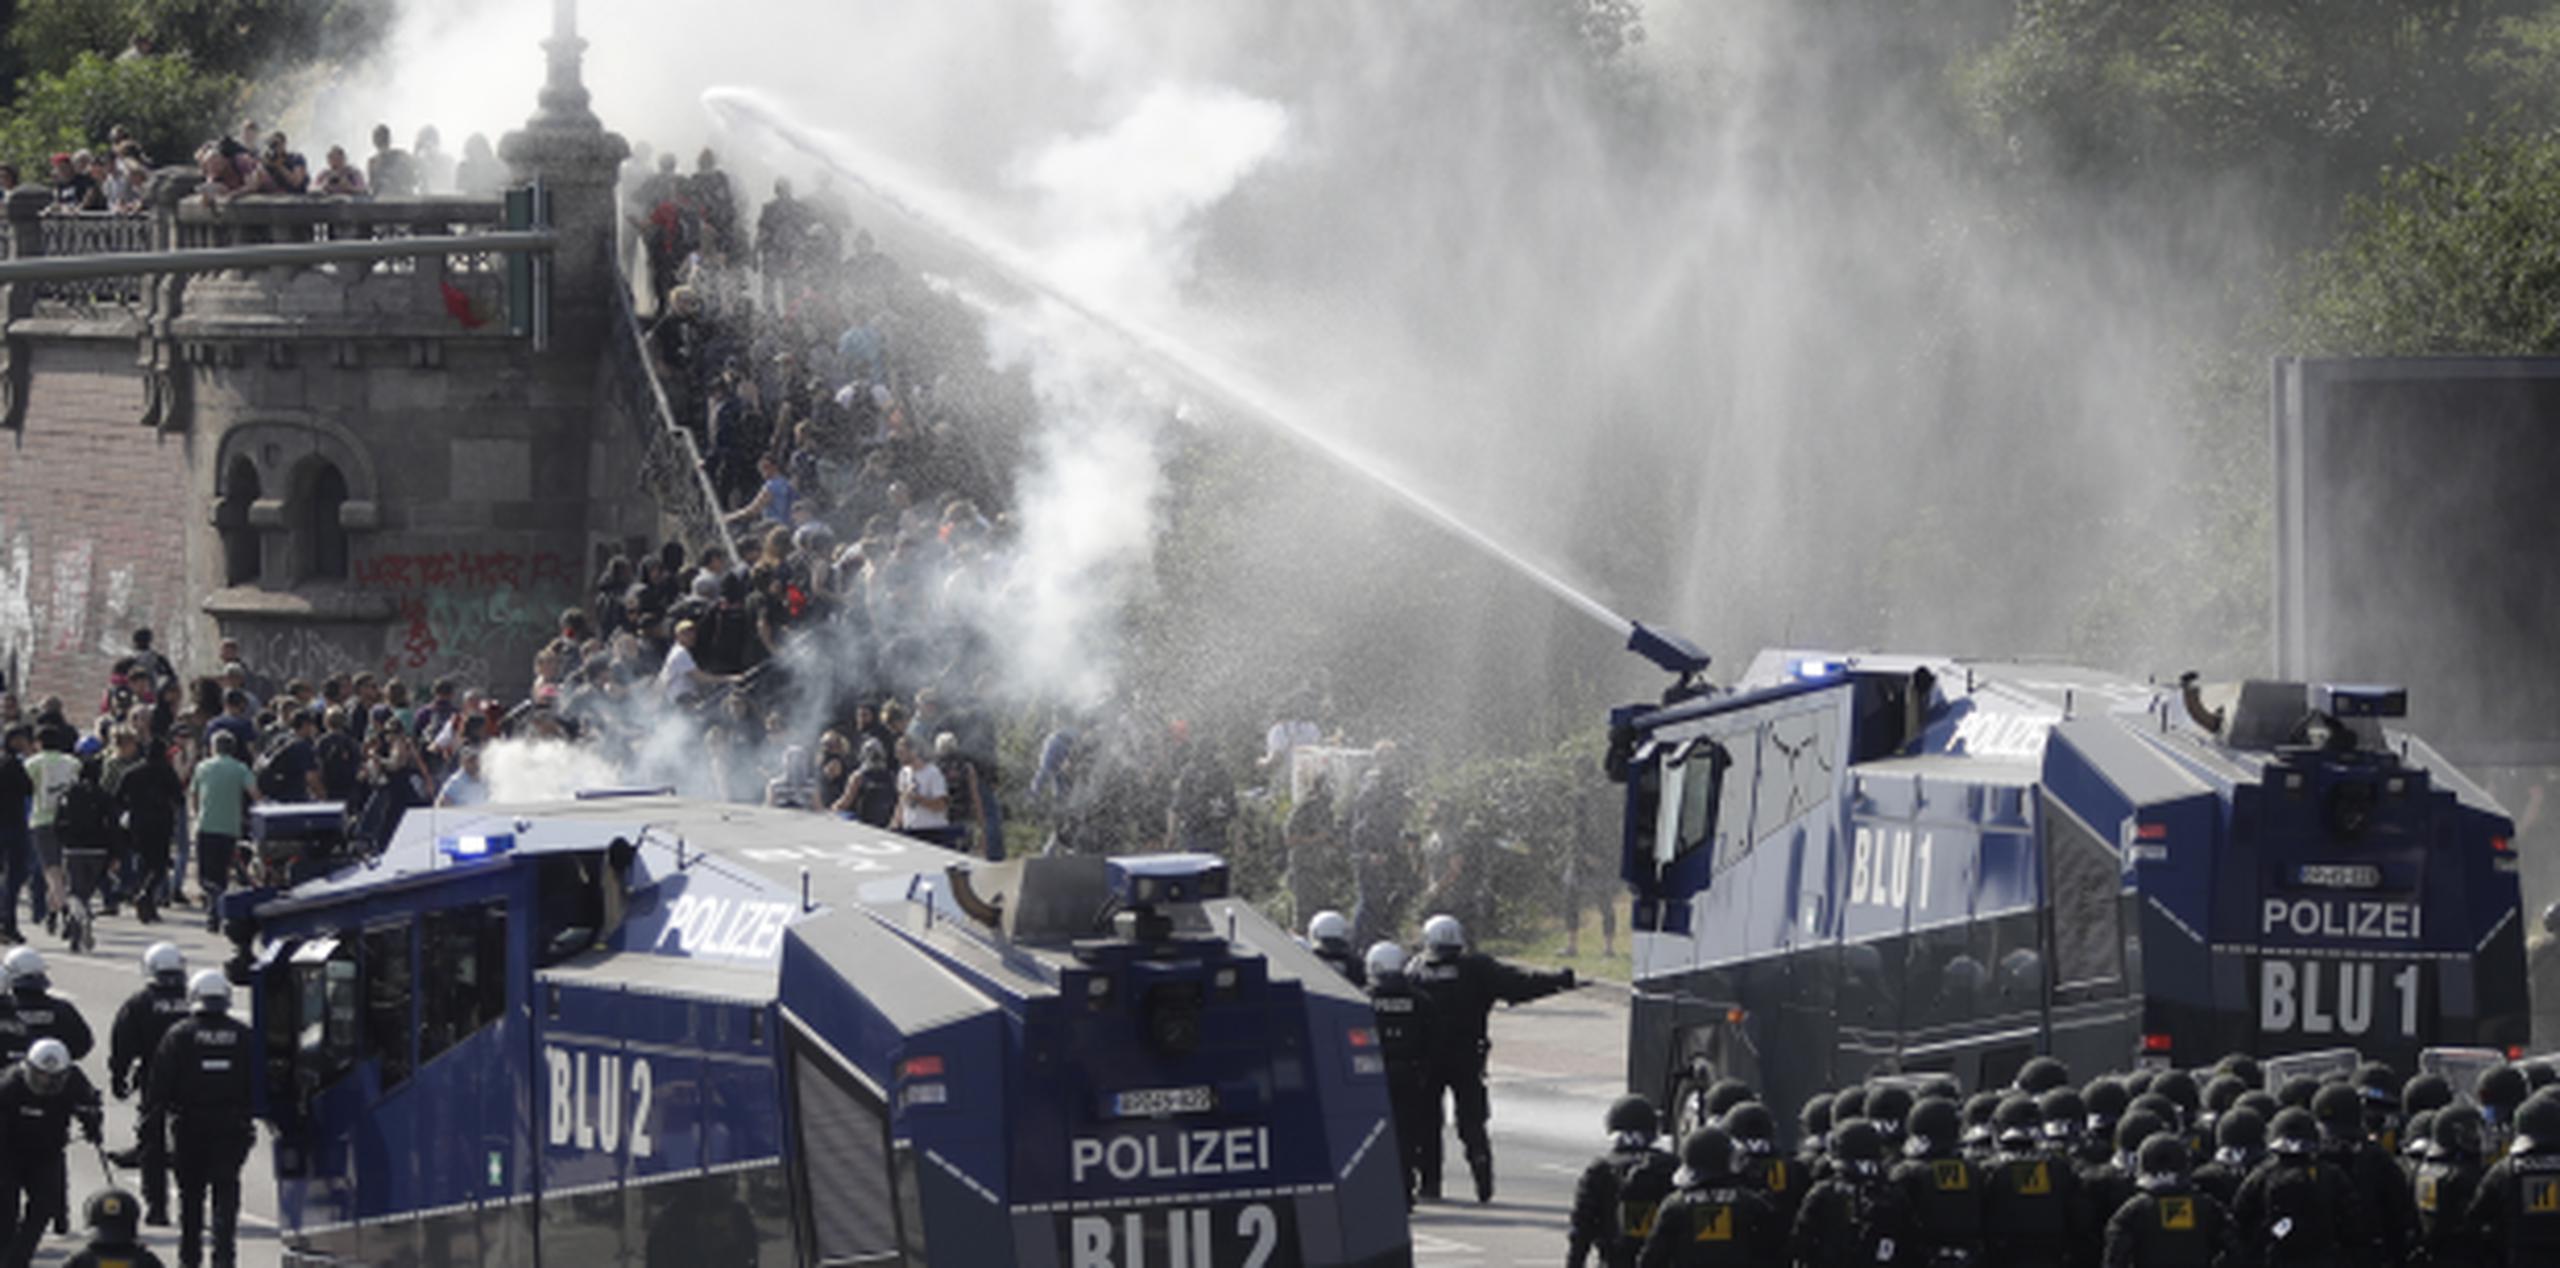 Los enfrentamientos entr policías y manifestantes continuaron sucediéndose durante este viernes en varias zonas de Hamburgo. (AP/Matthias Schrader)